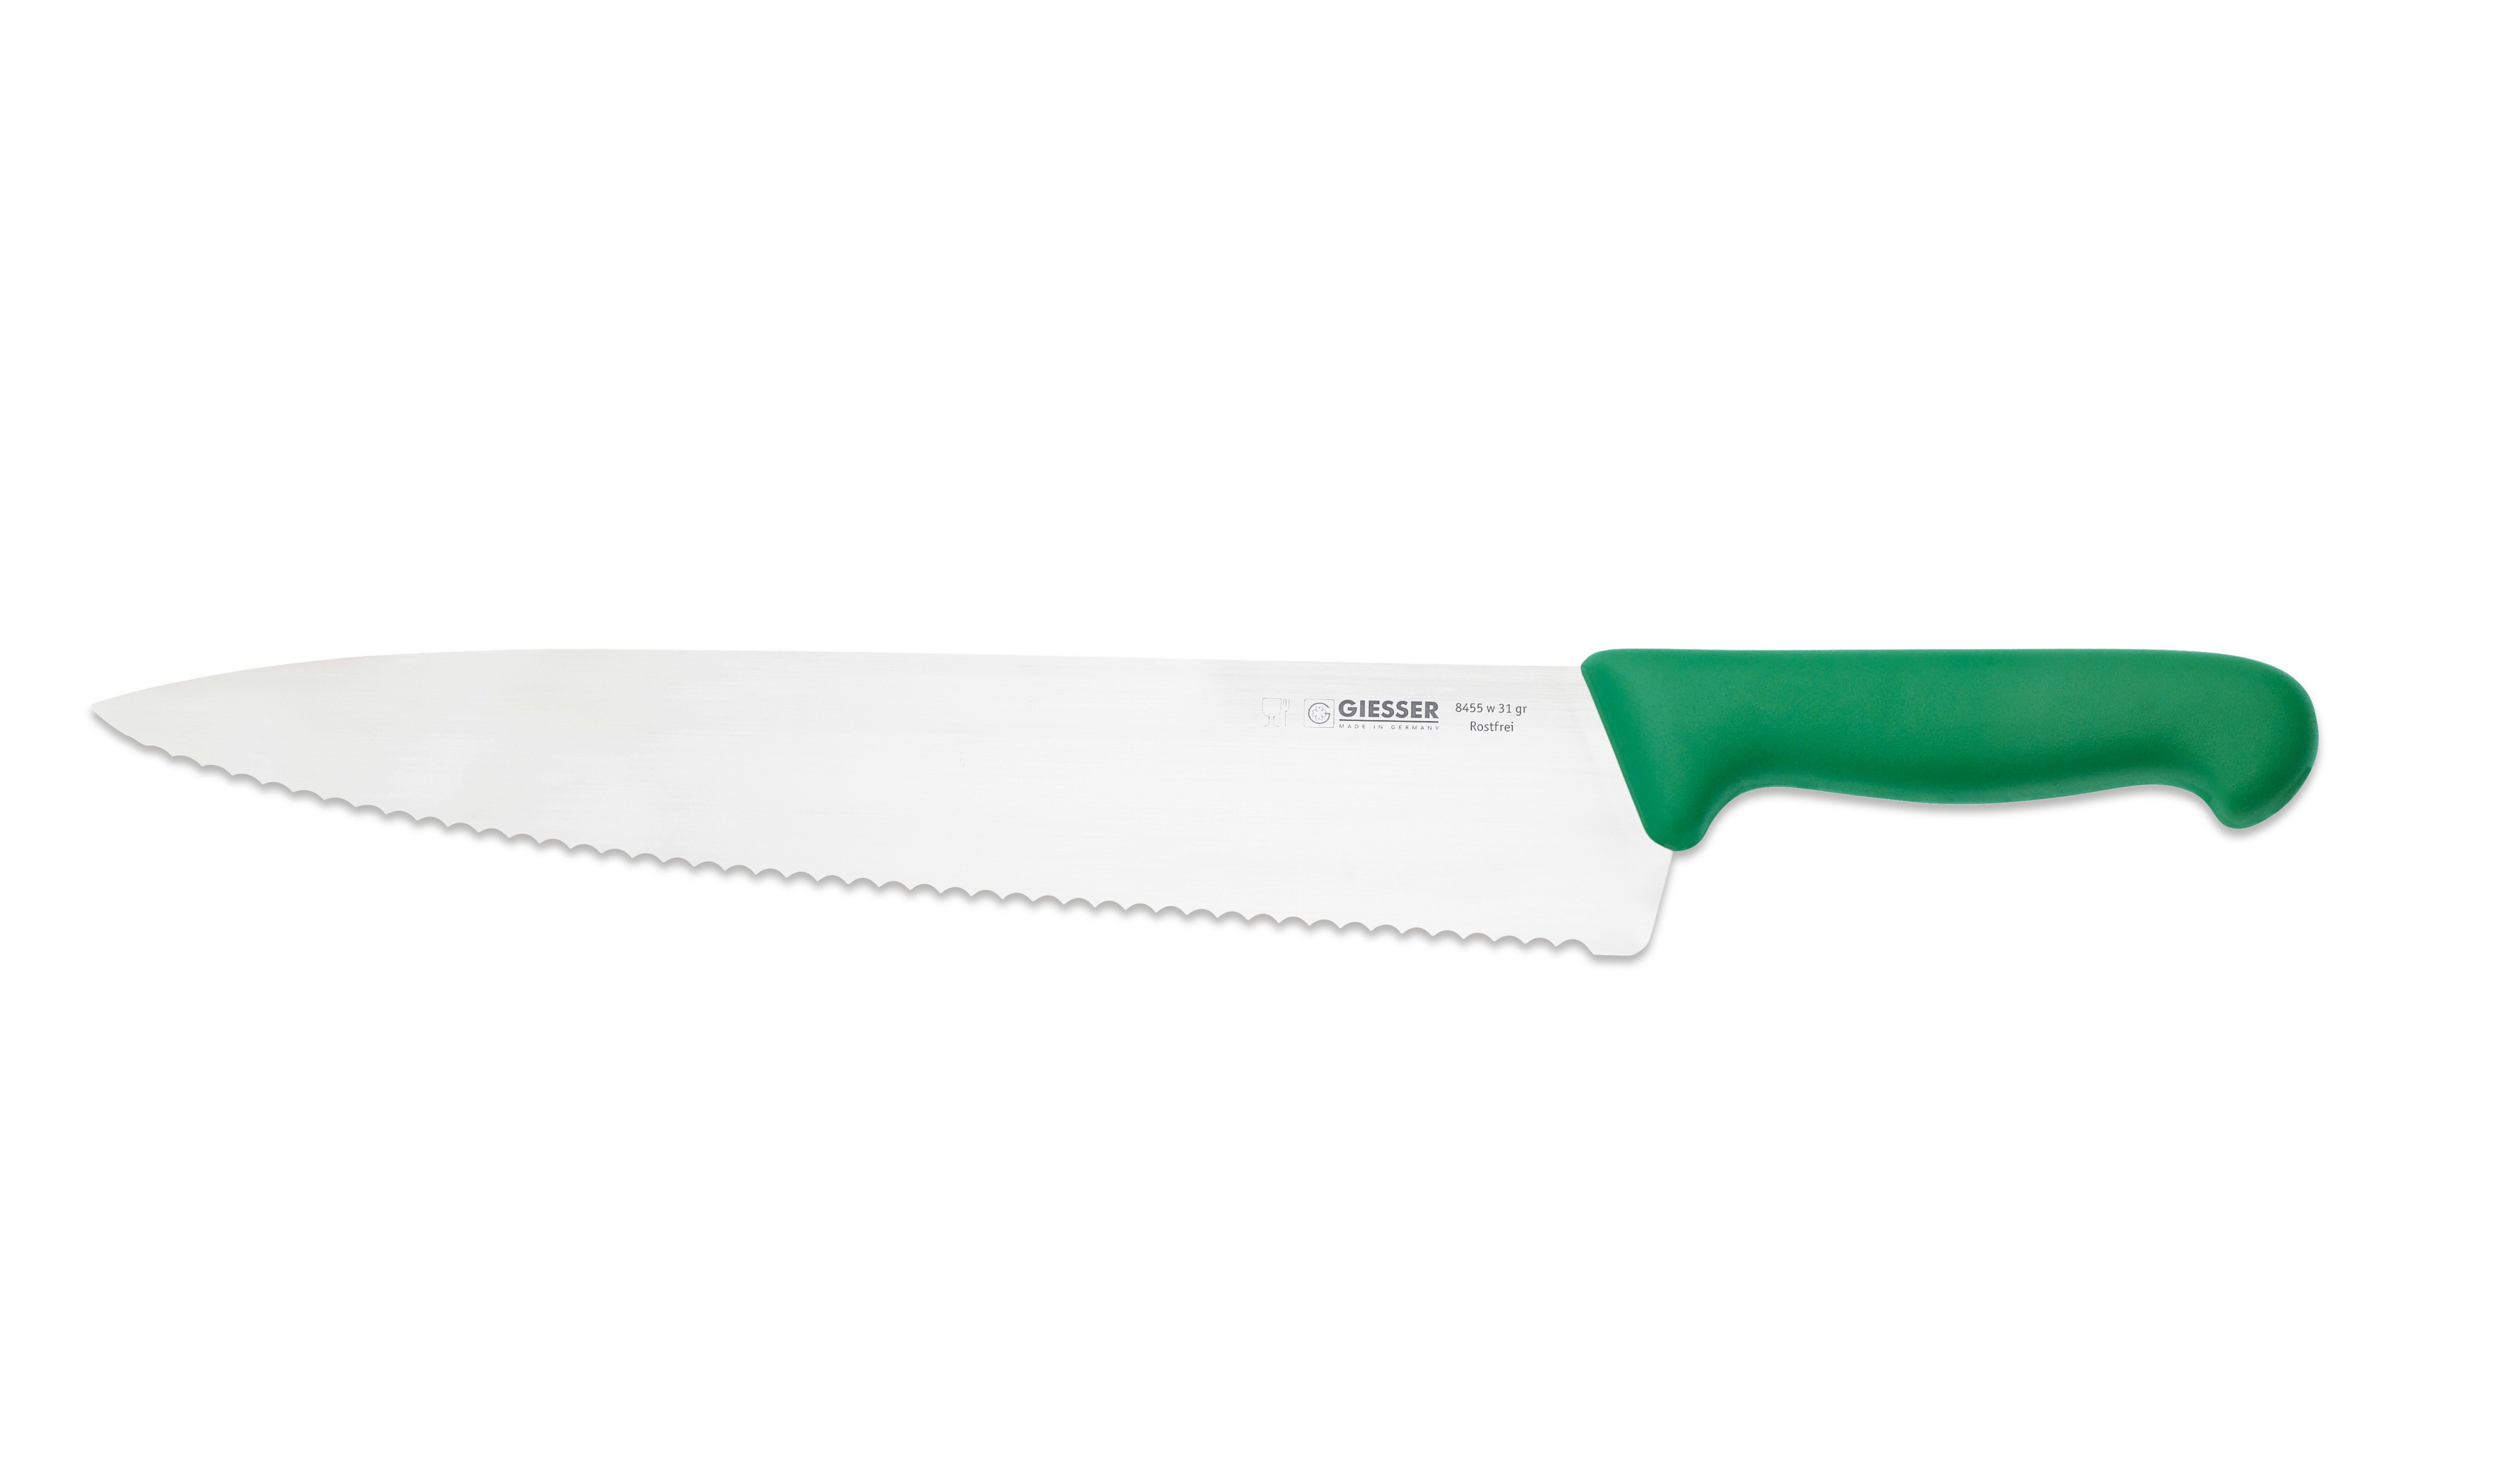 Giesser Messer Kochmesser Küchenmesser Rostfrei, 8455, jede grün-Welle breite breit Küche Handabzug, scharf, Form, für Ideal